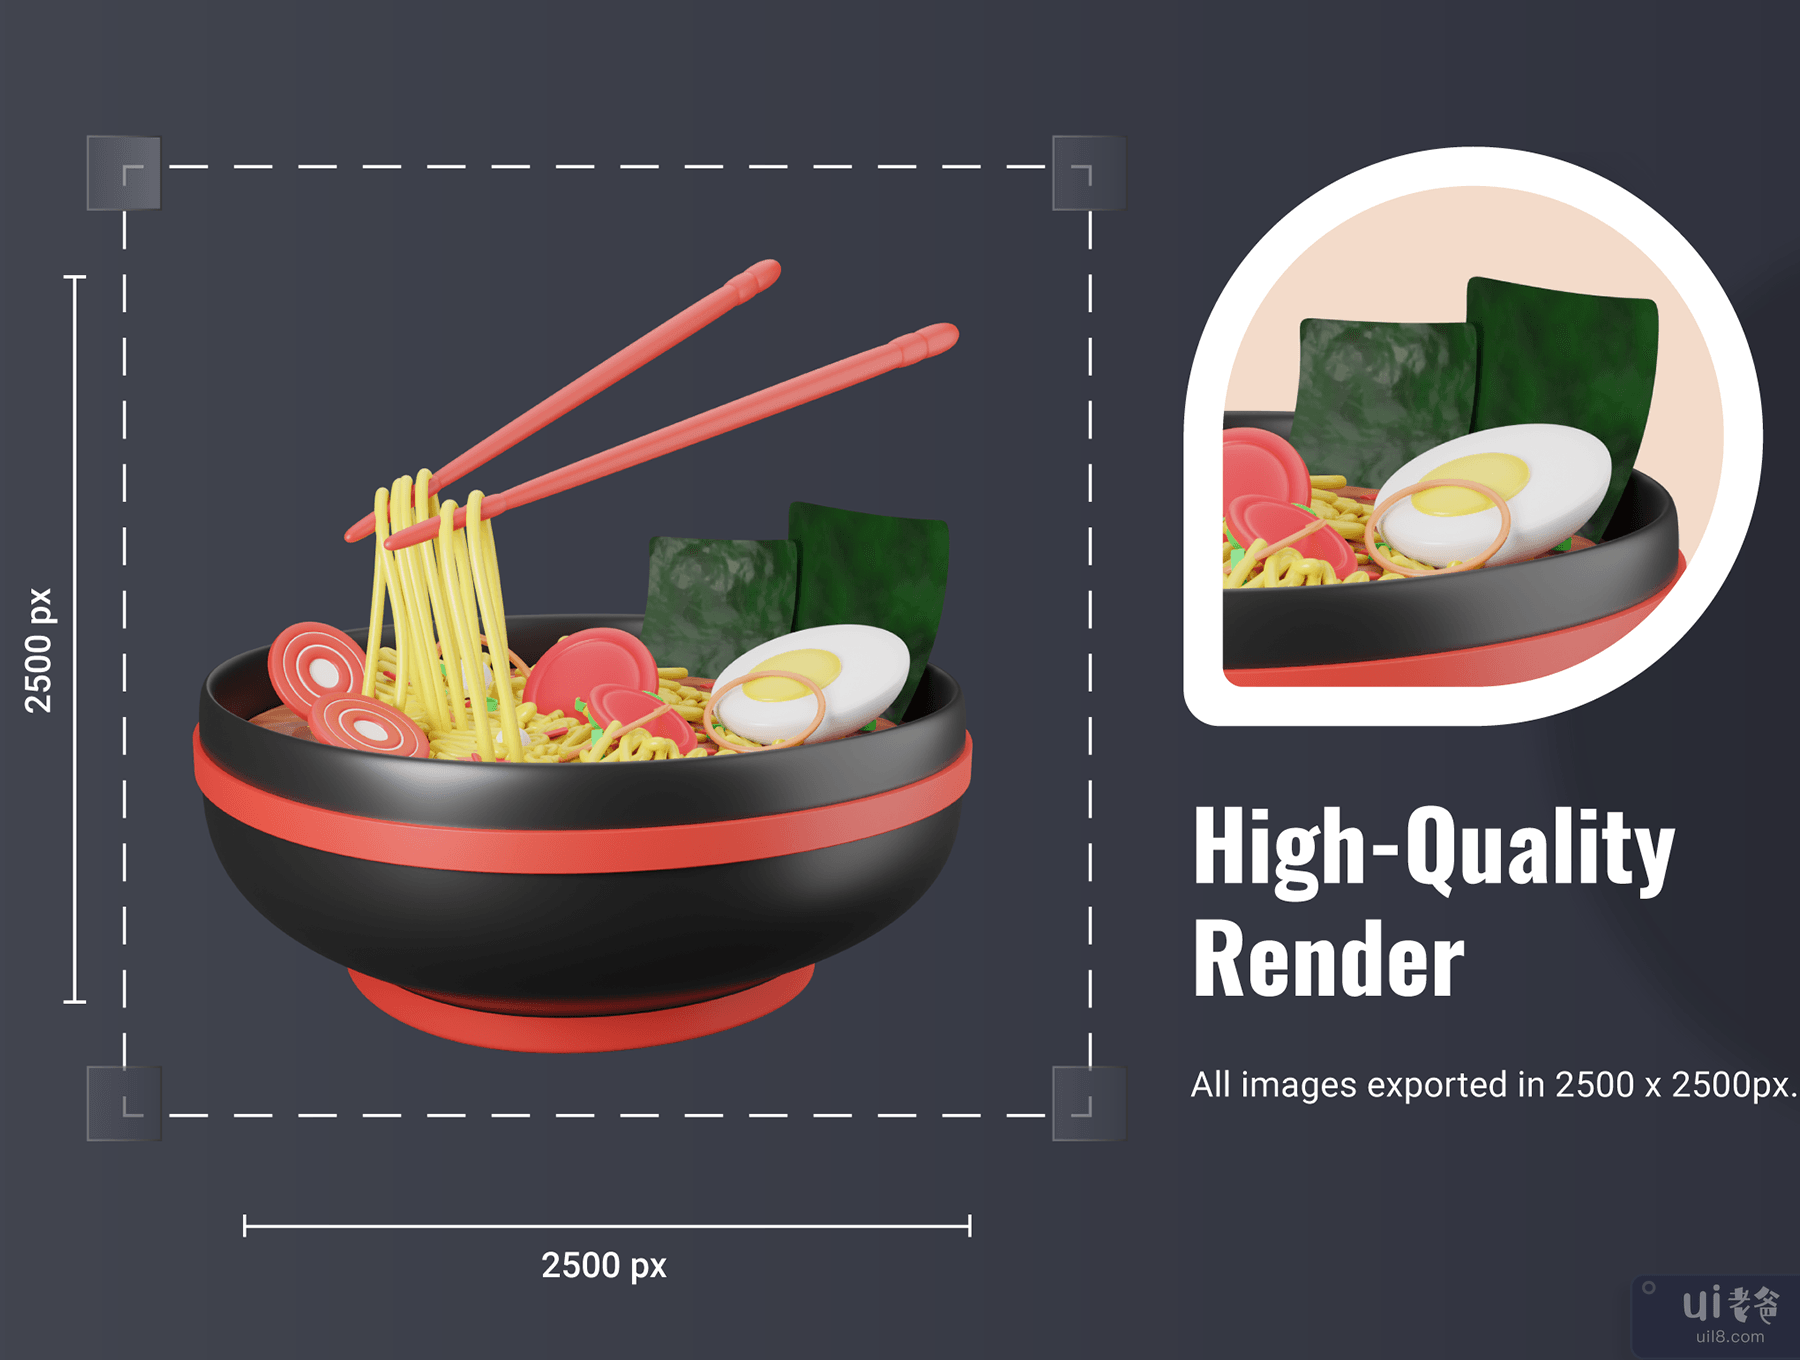 30 个 3D 食品和餐饮图标插图 (30 3D Food & Meals Icons Illustration)插图4